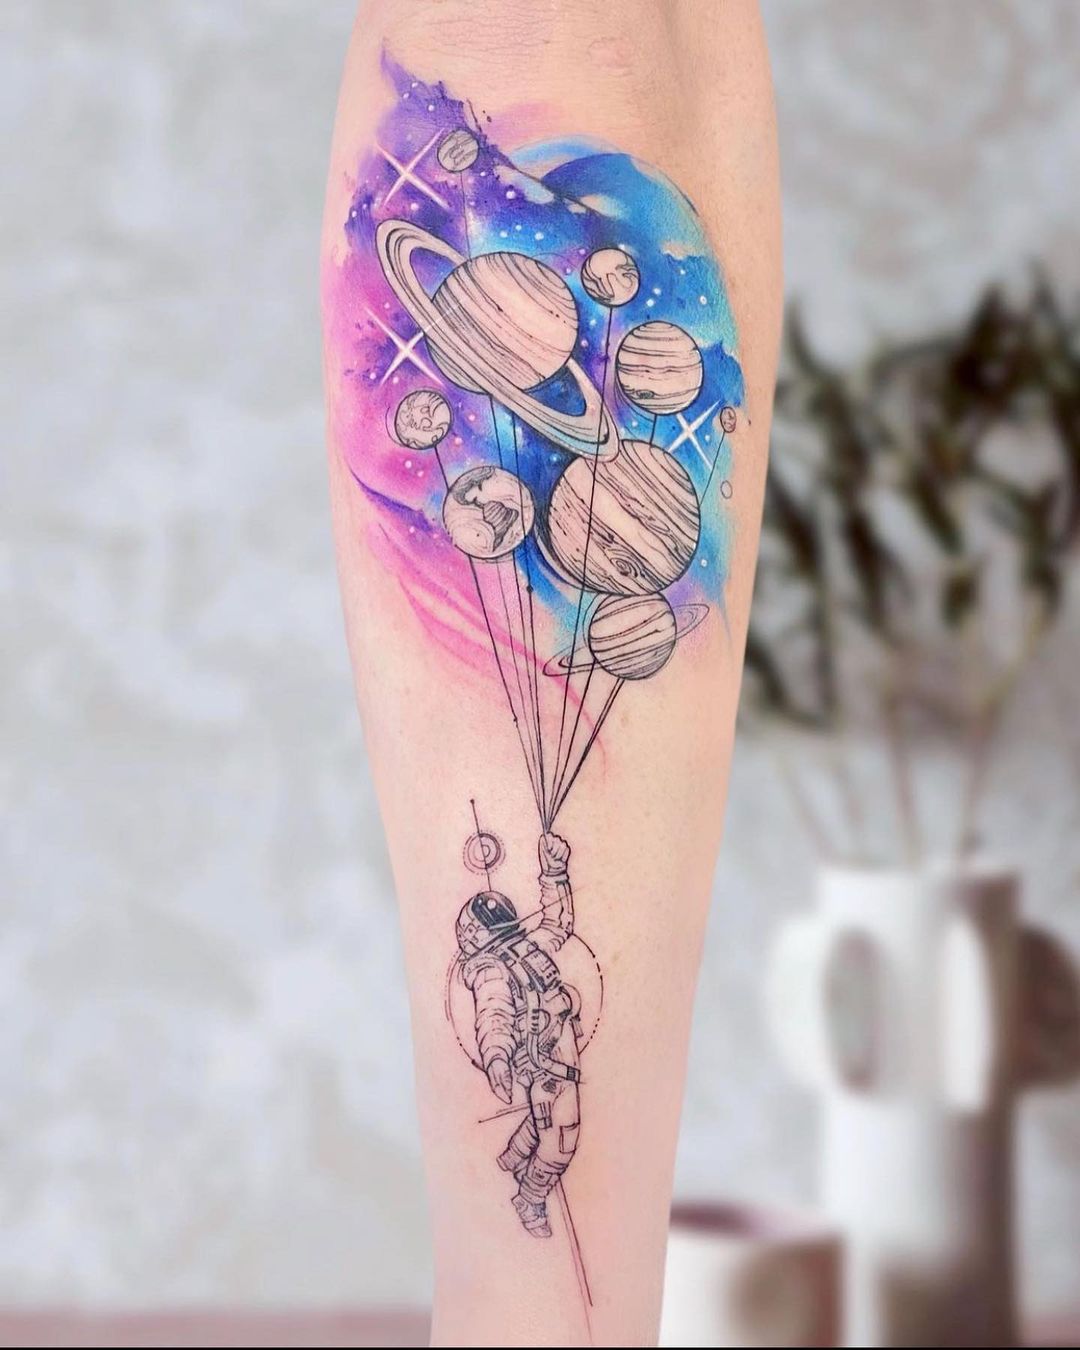 Balloon Planets Tattoo Astronaut - Best Tattoo Ideas Gallery